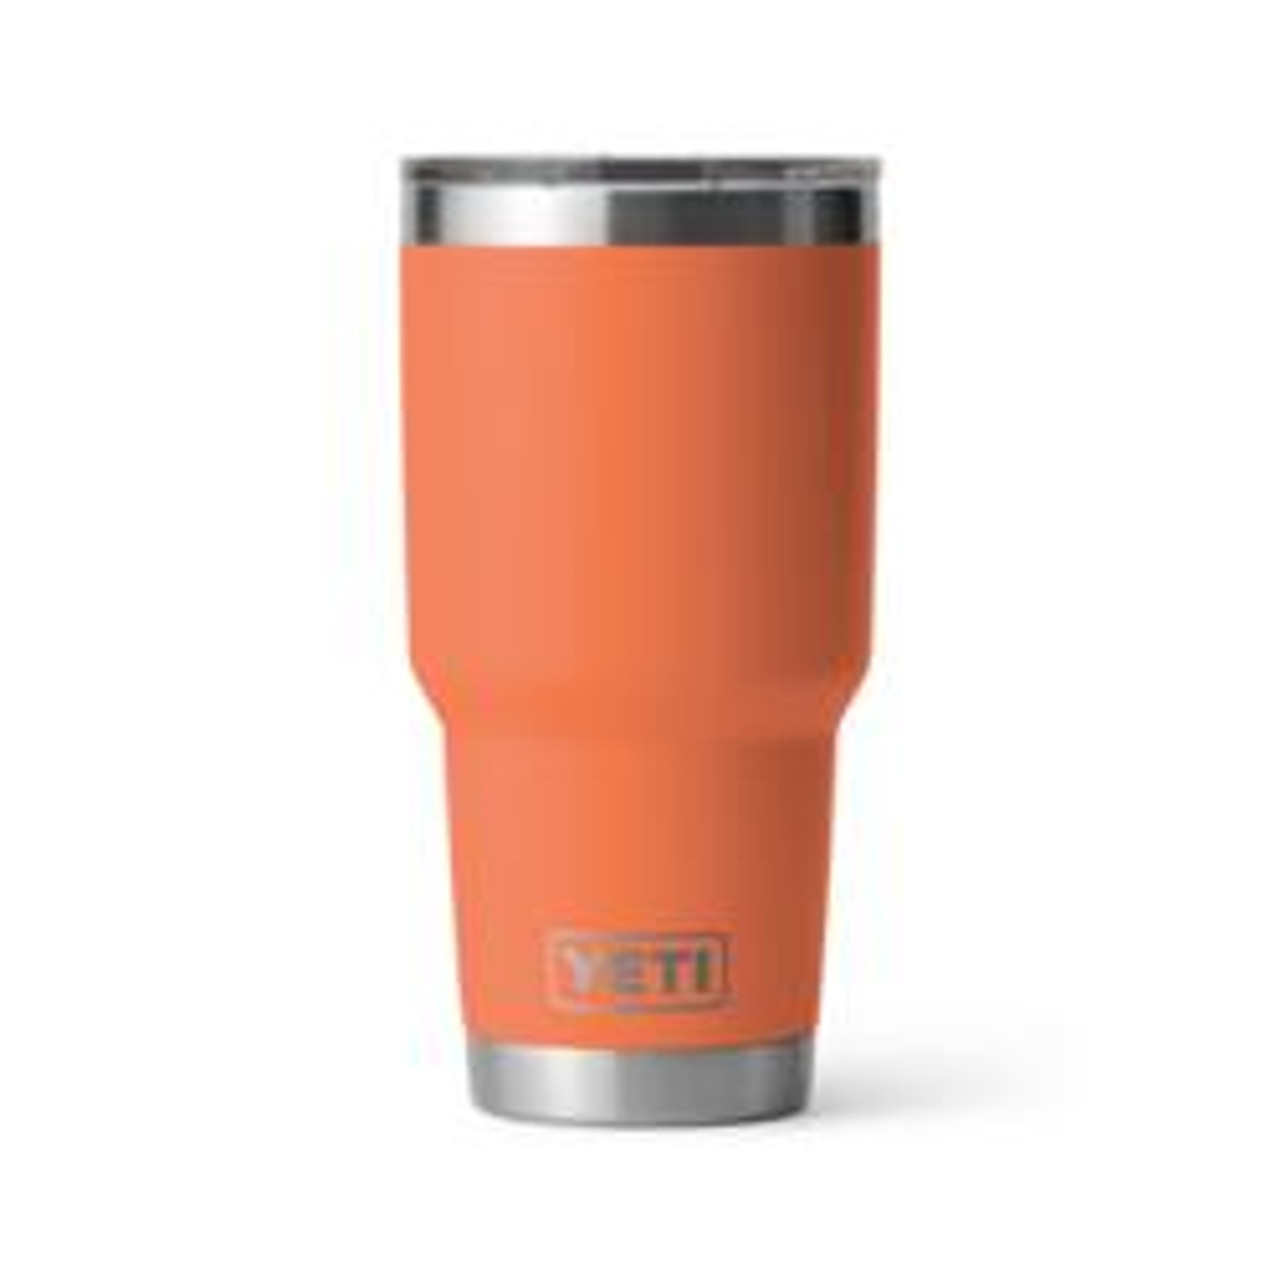 New 8oz (263mls) Yeti cups @trailblazersalbany @yeti_au